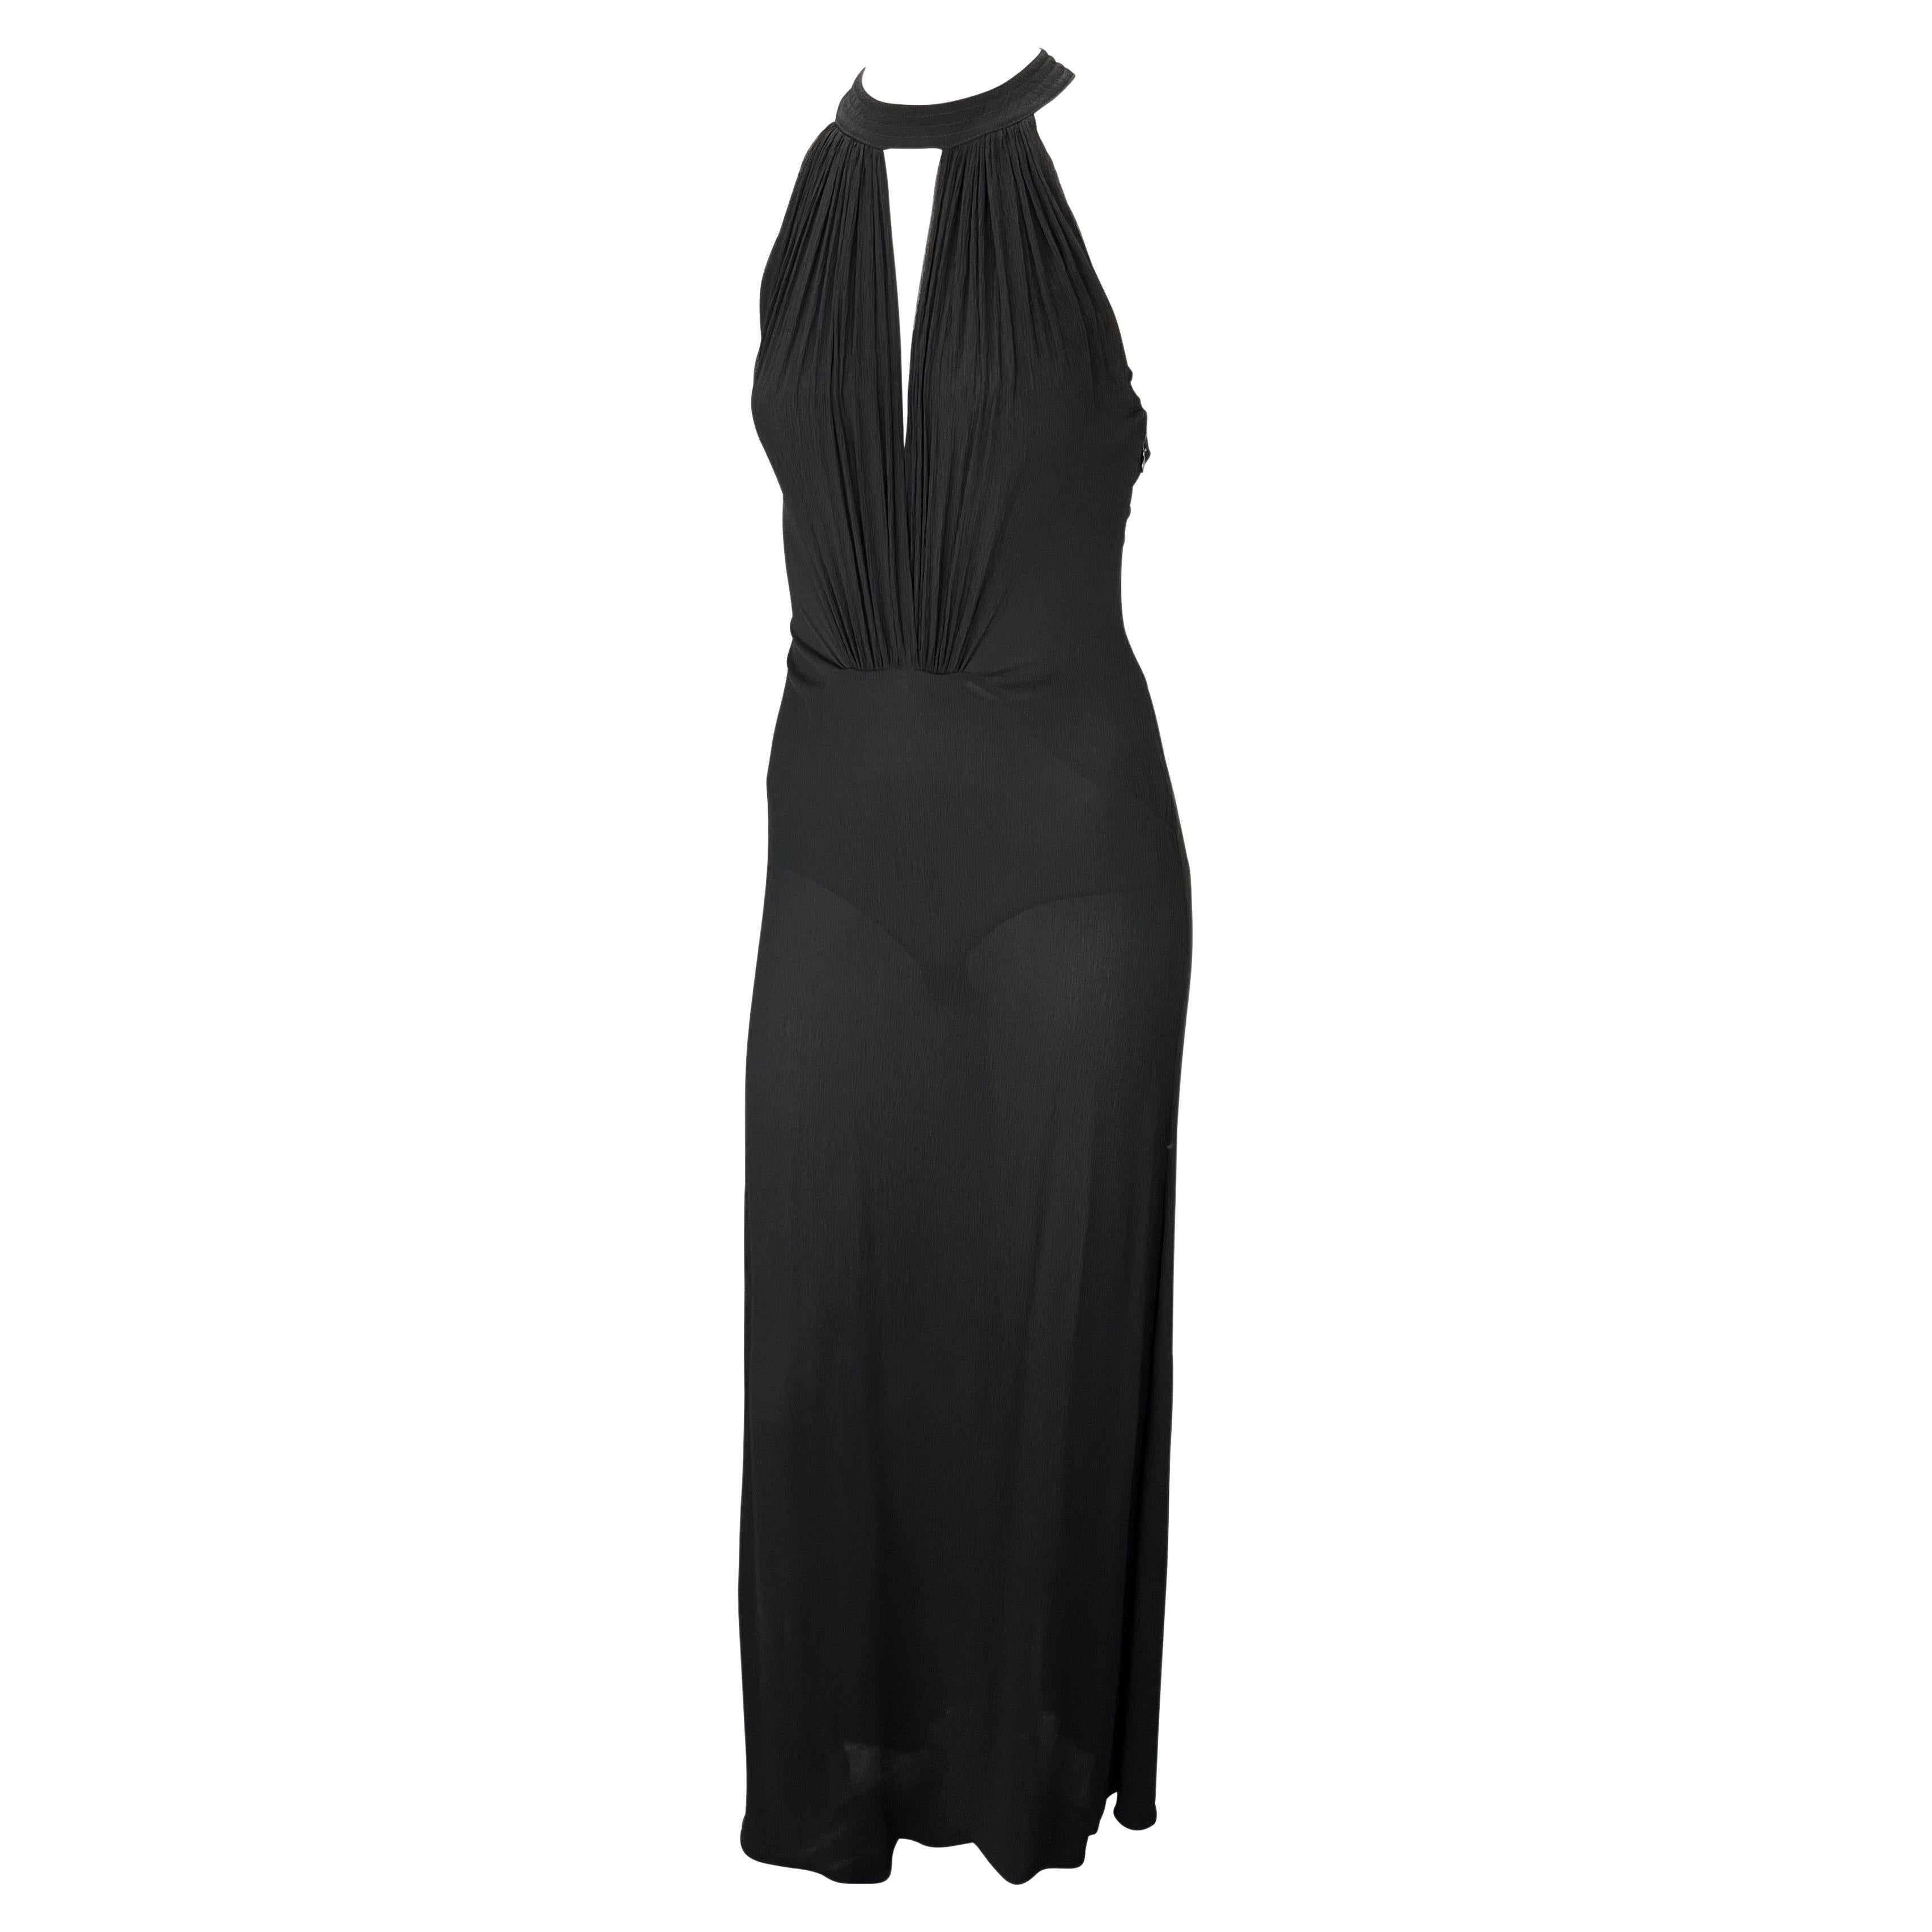 Présentation d'une robe dos nu en crêpe de soie noir et dentelle Gianni Versace Couture, créée par Donatella Versace. Datant du début des années 2000, cette superbe robe longue est dotée d'un col licou, d'un décolleté plongeant, d'un sous-vêtement